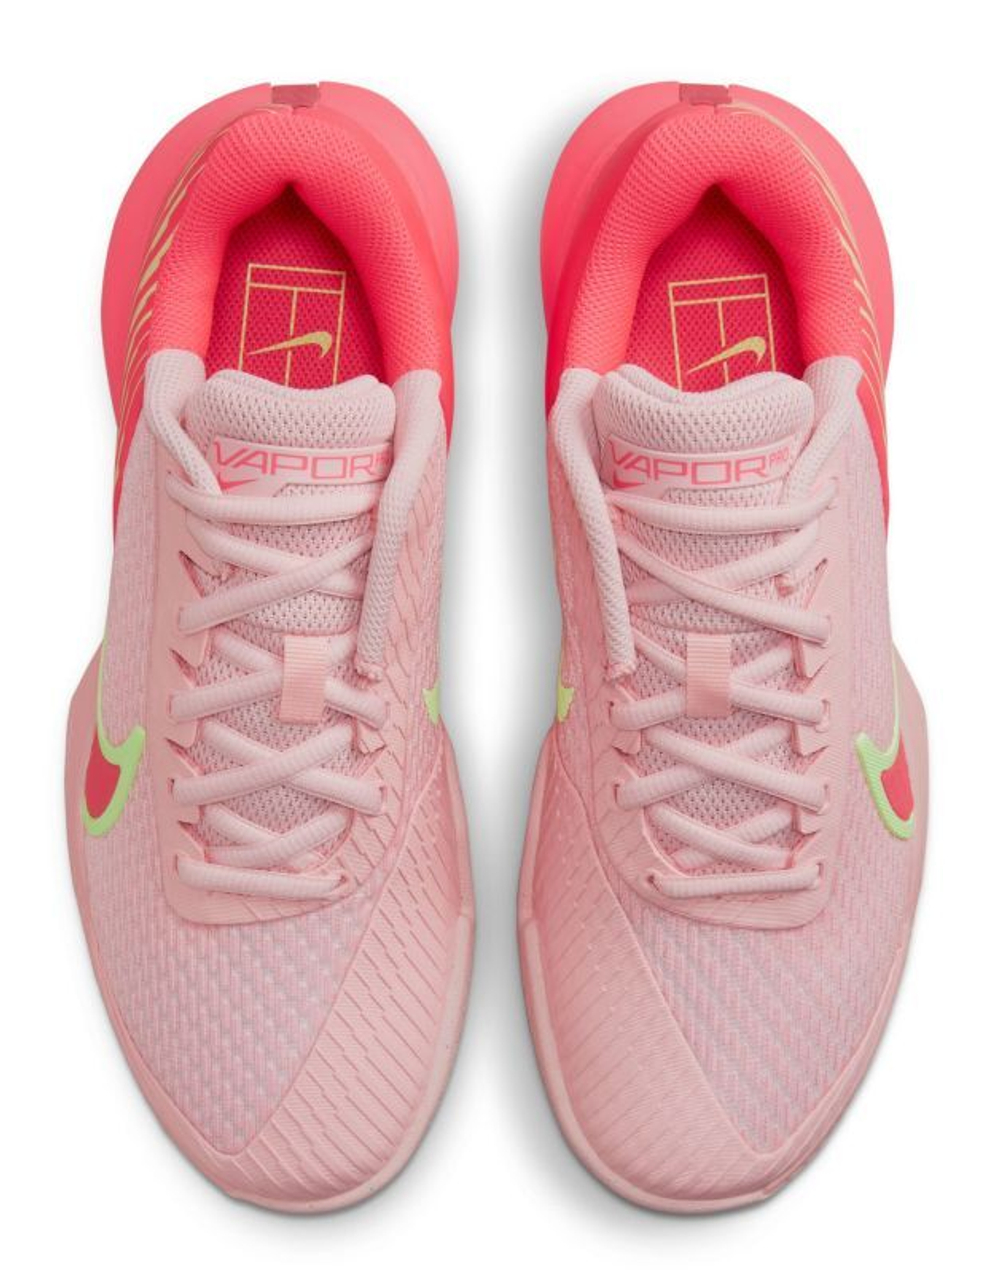 Женские низкие кроссовки Nike — купить в интернет-магазине Ламода